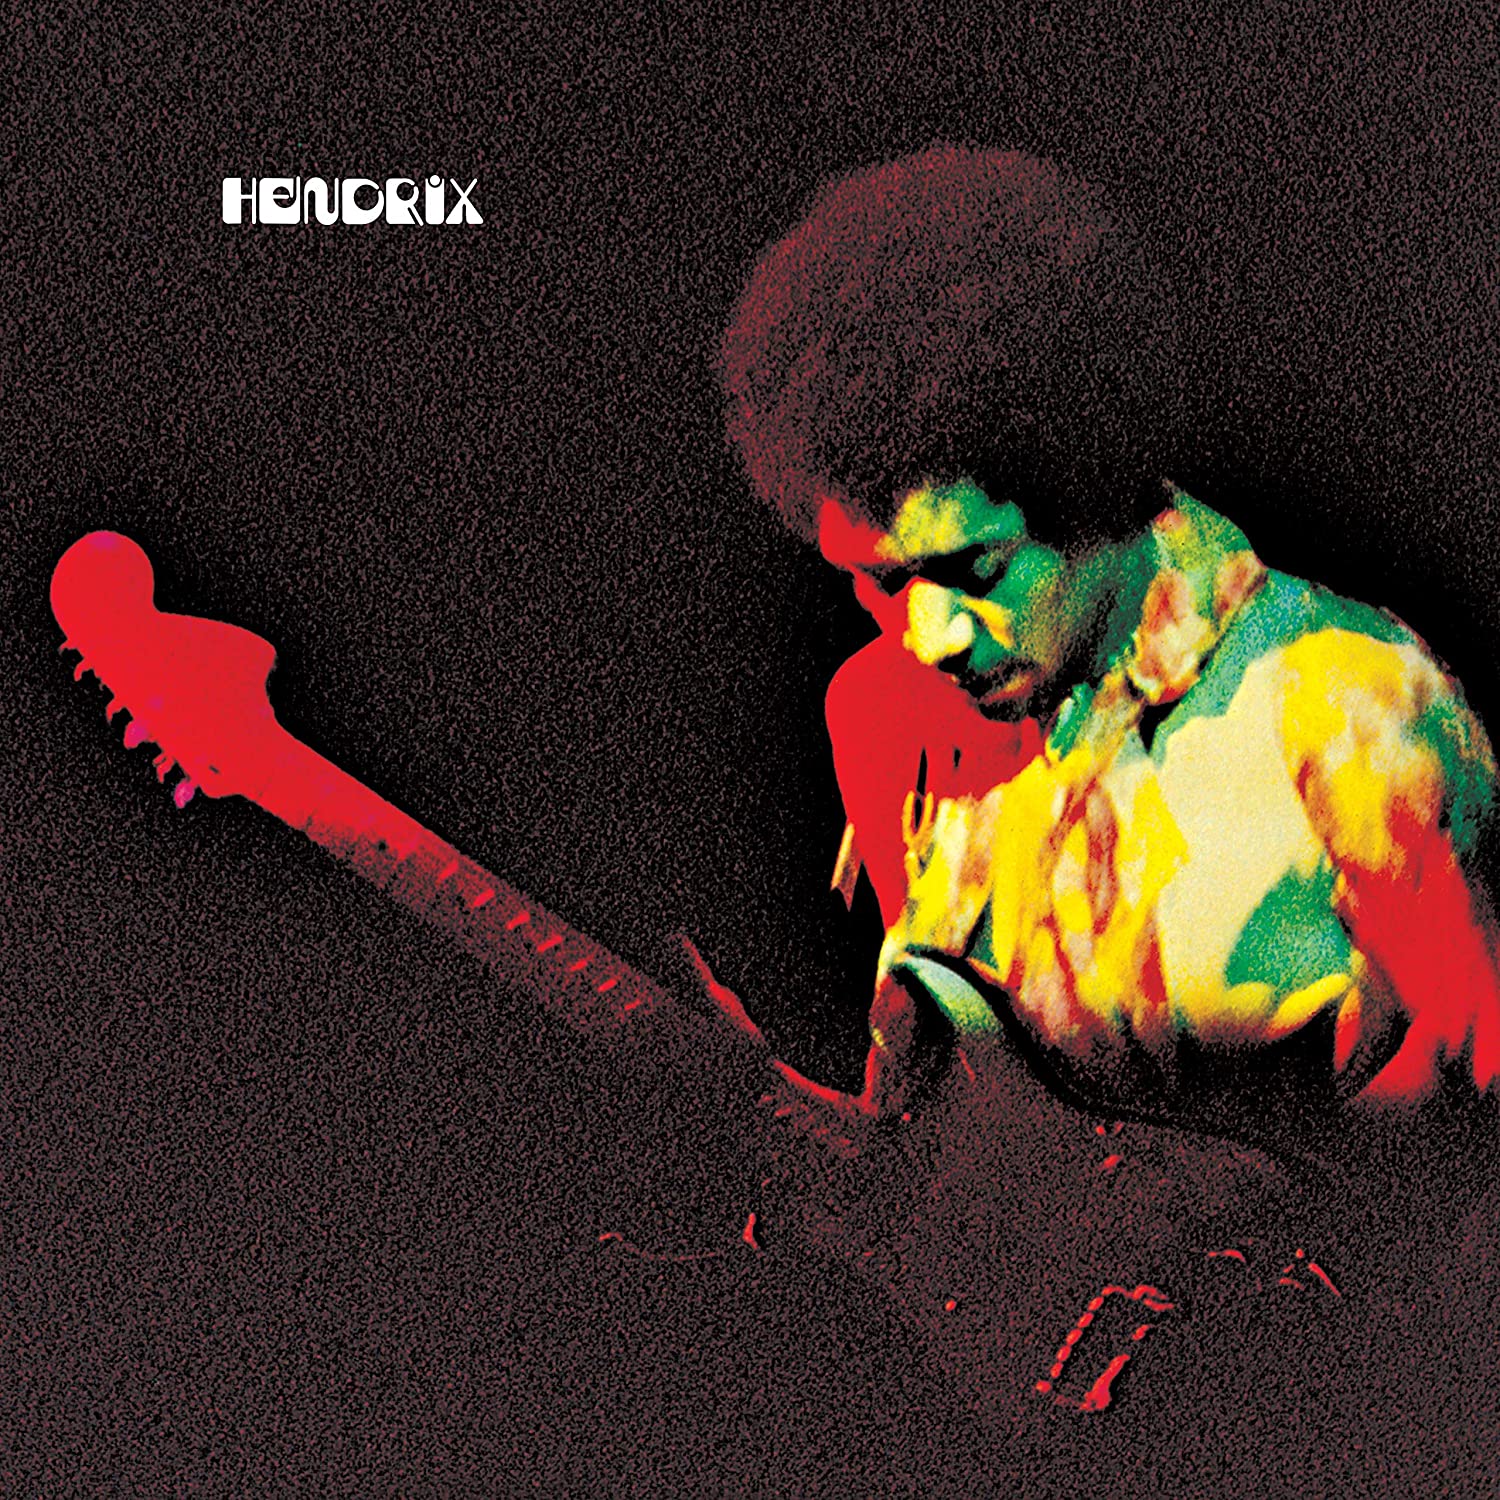 Vinile Jimi Hendrix - Band Of Gypsys (50Th Anniversary, 180 Gram Black Vinyl, All-Analog Remastered, 8-Page Booklet, Poster, Gatefold) NUOVO SIGILLATO, EDIZIONE DEL 27/03/2020 SUBITO DISPONIBILE